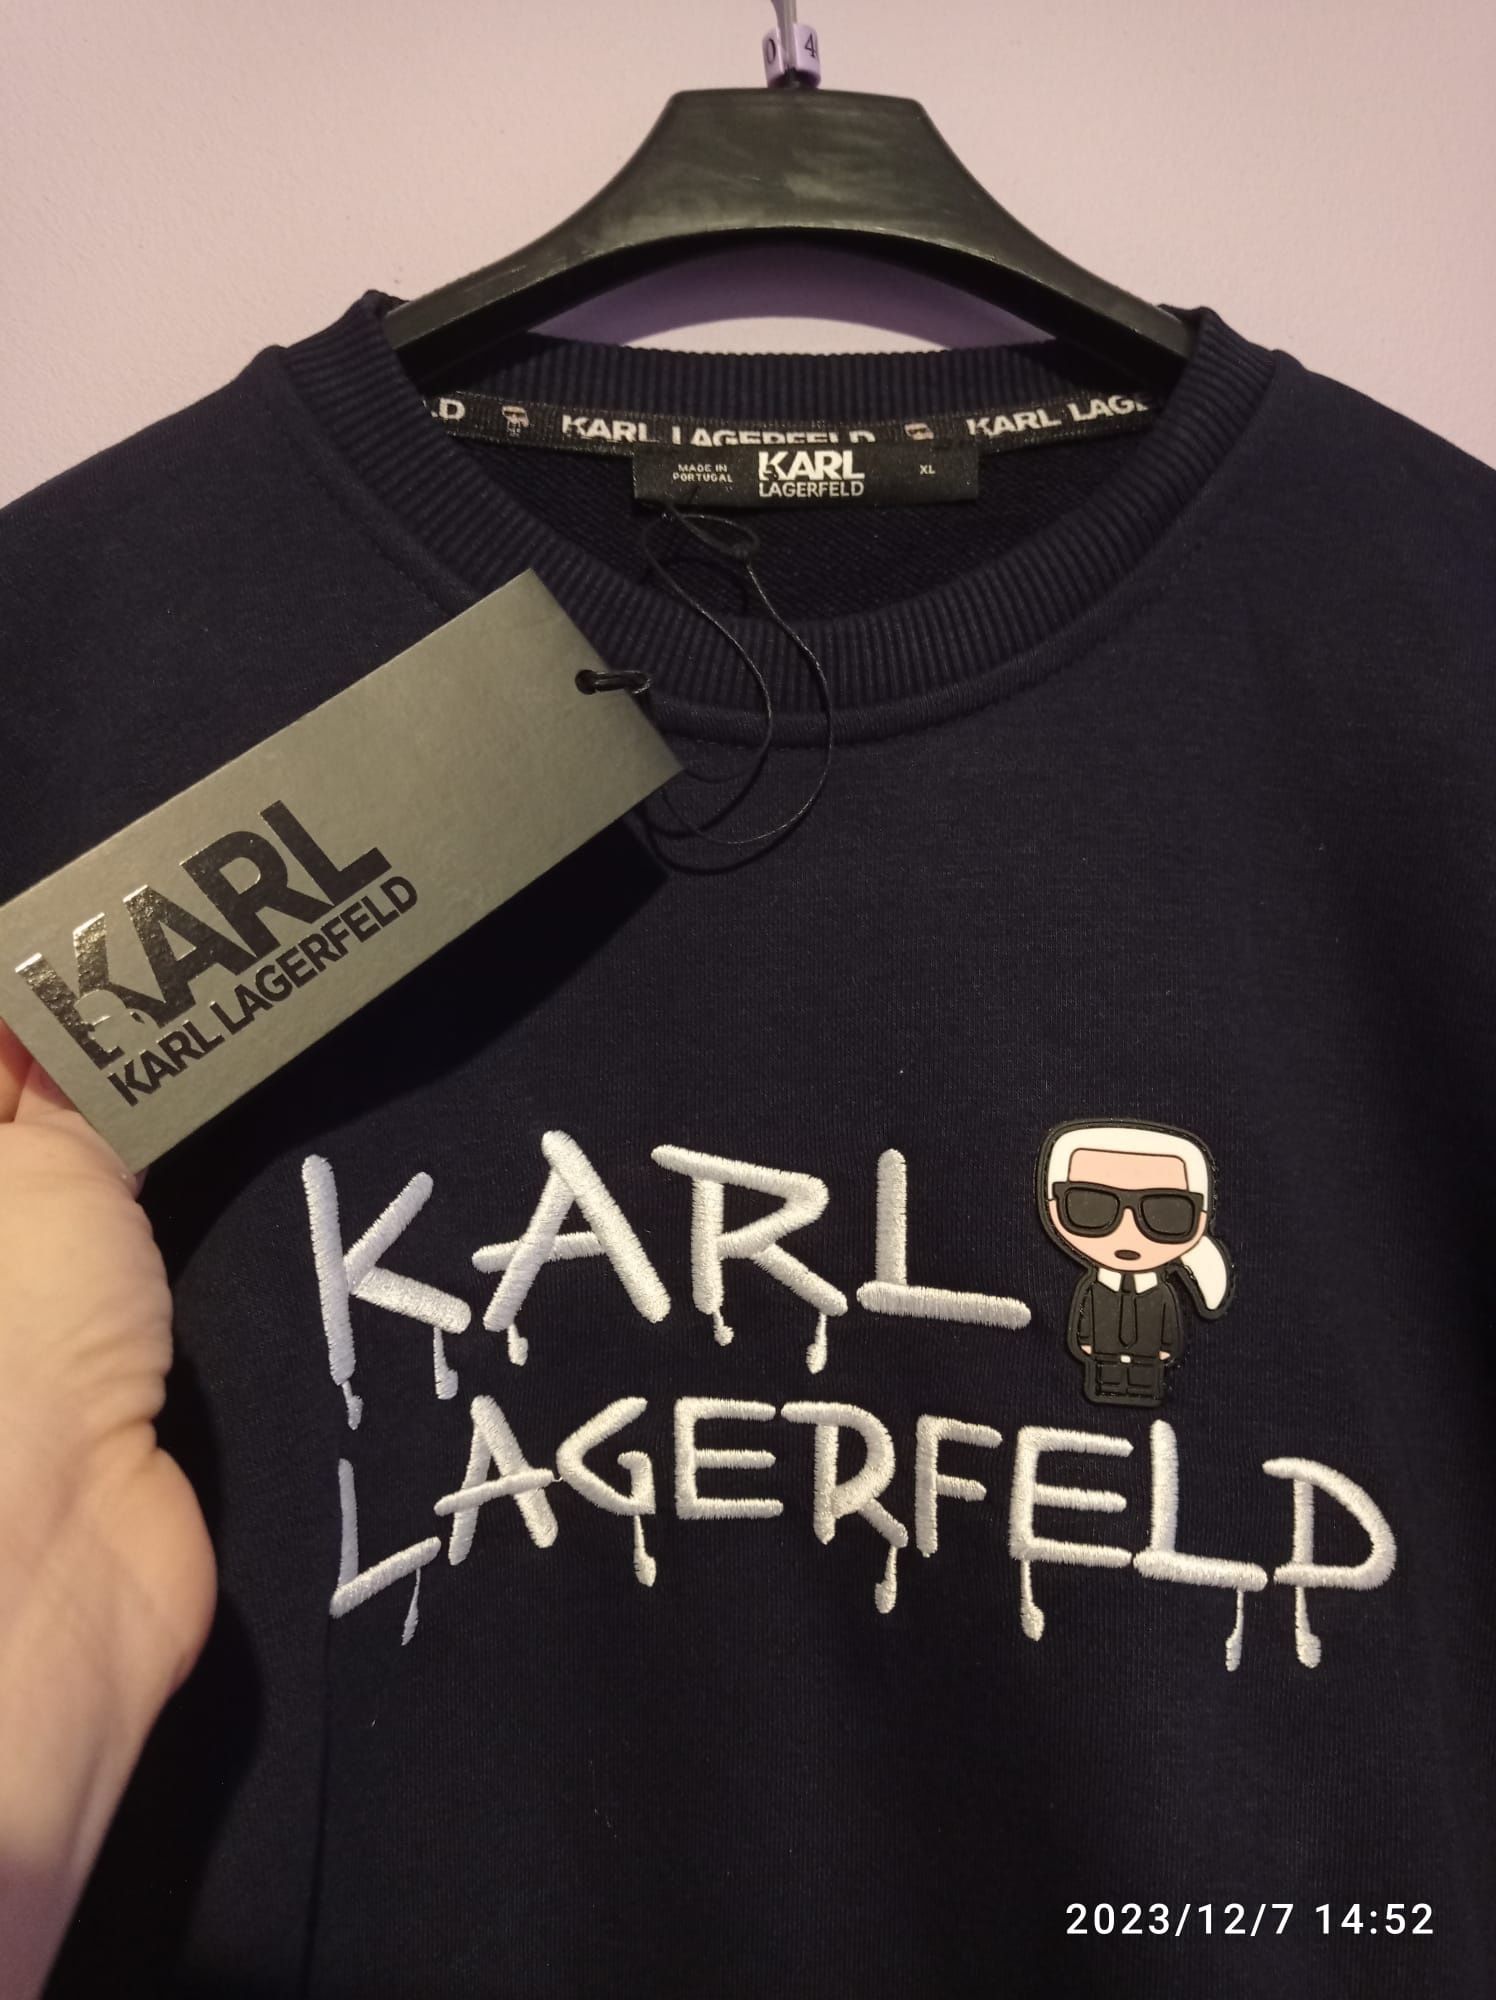 Bluza od KARL LEGERFELD w kolorze ciemno-granatowym.